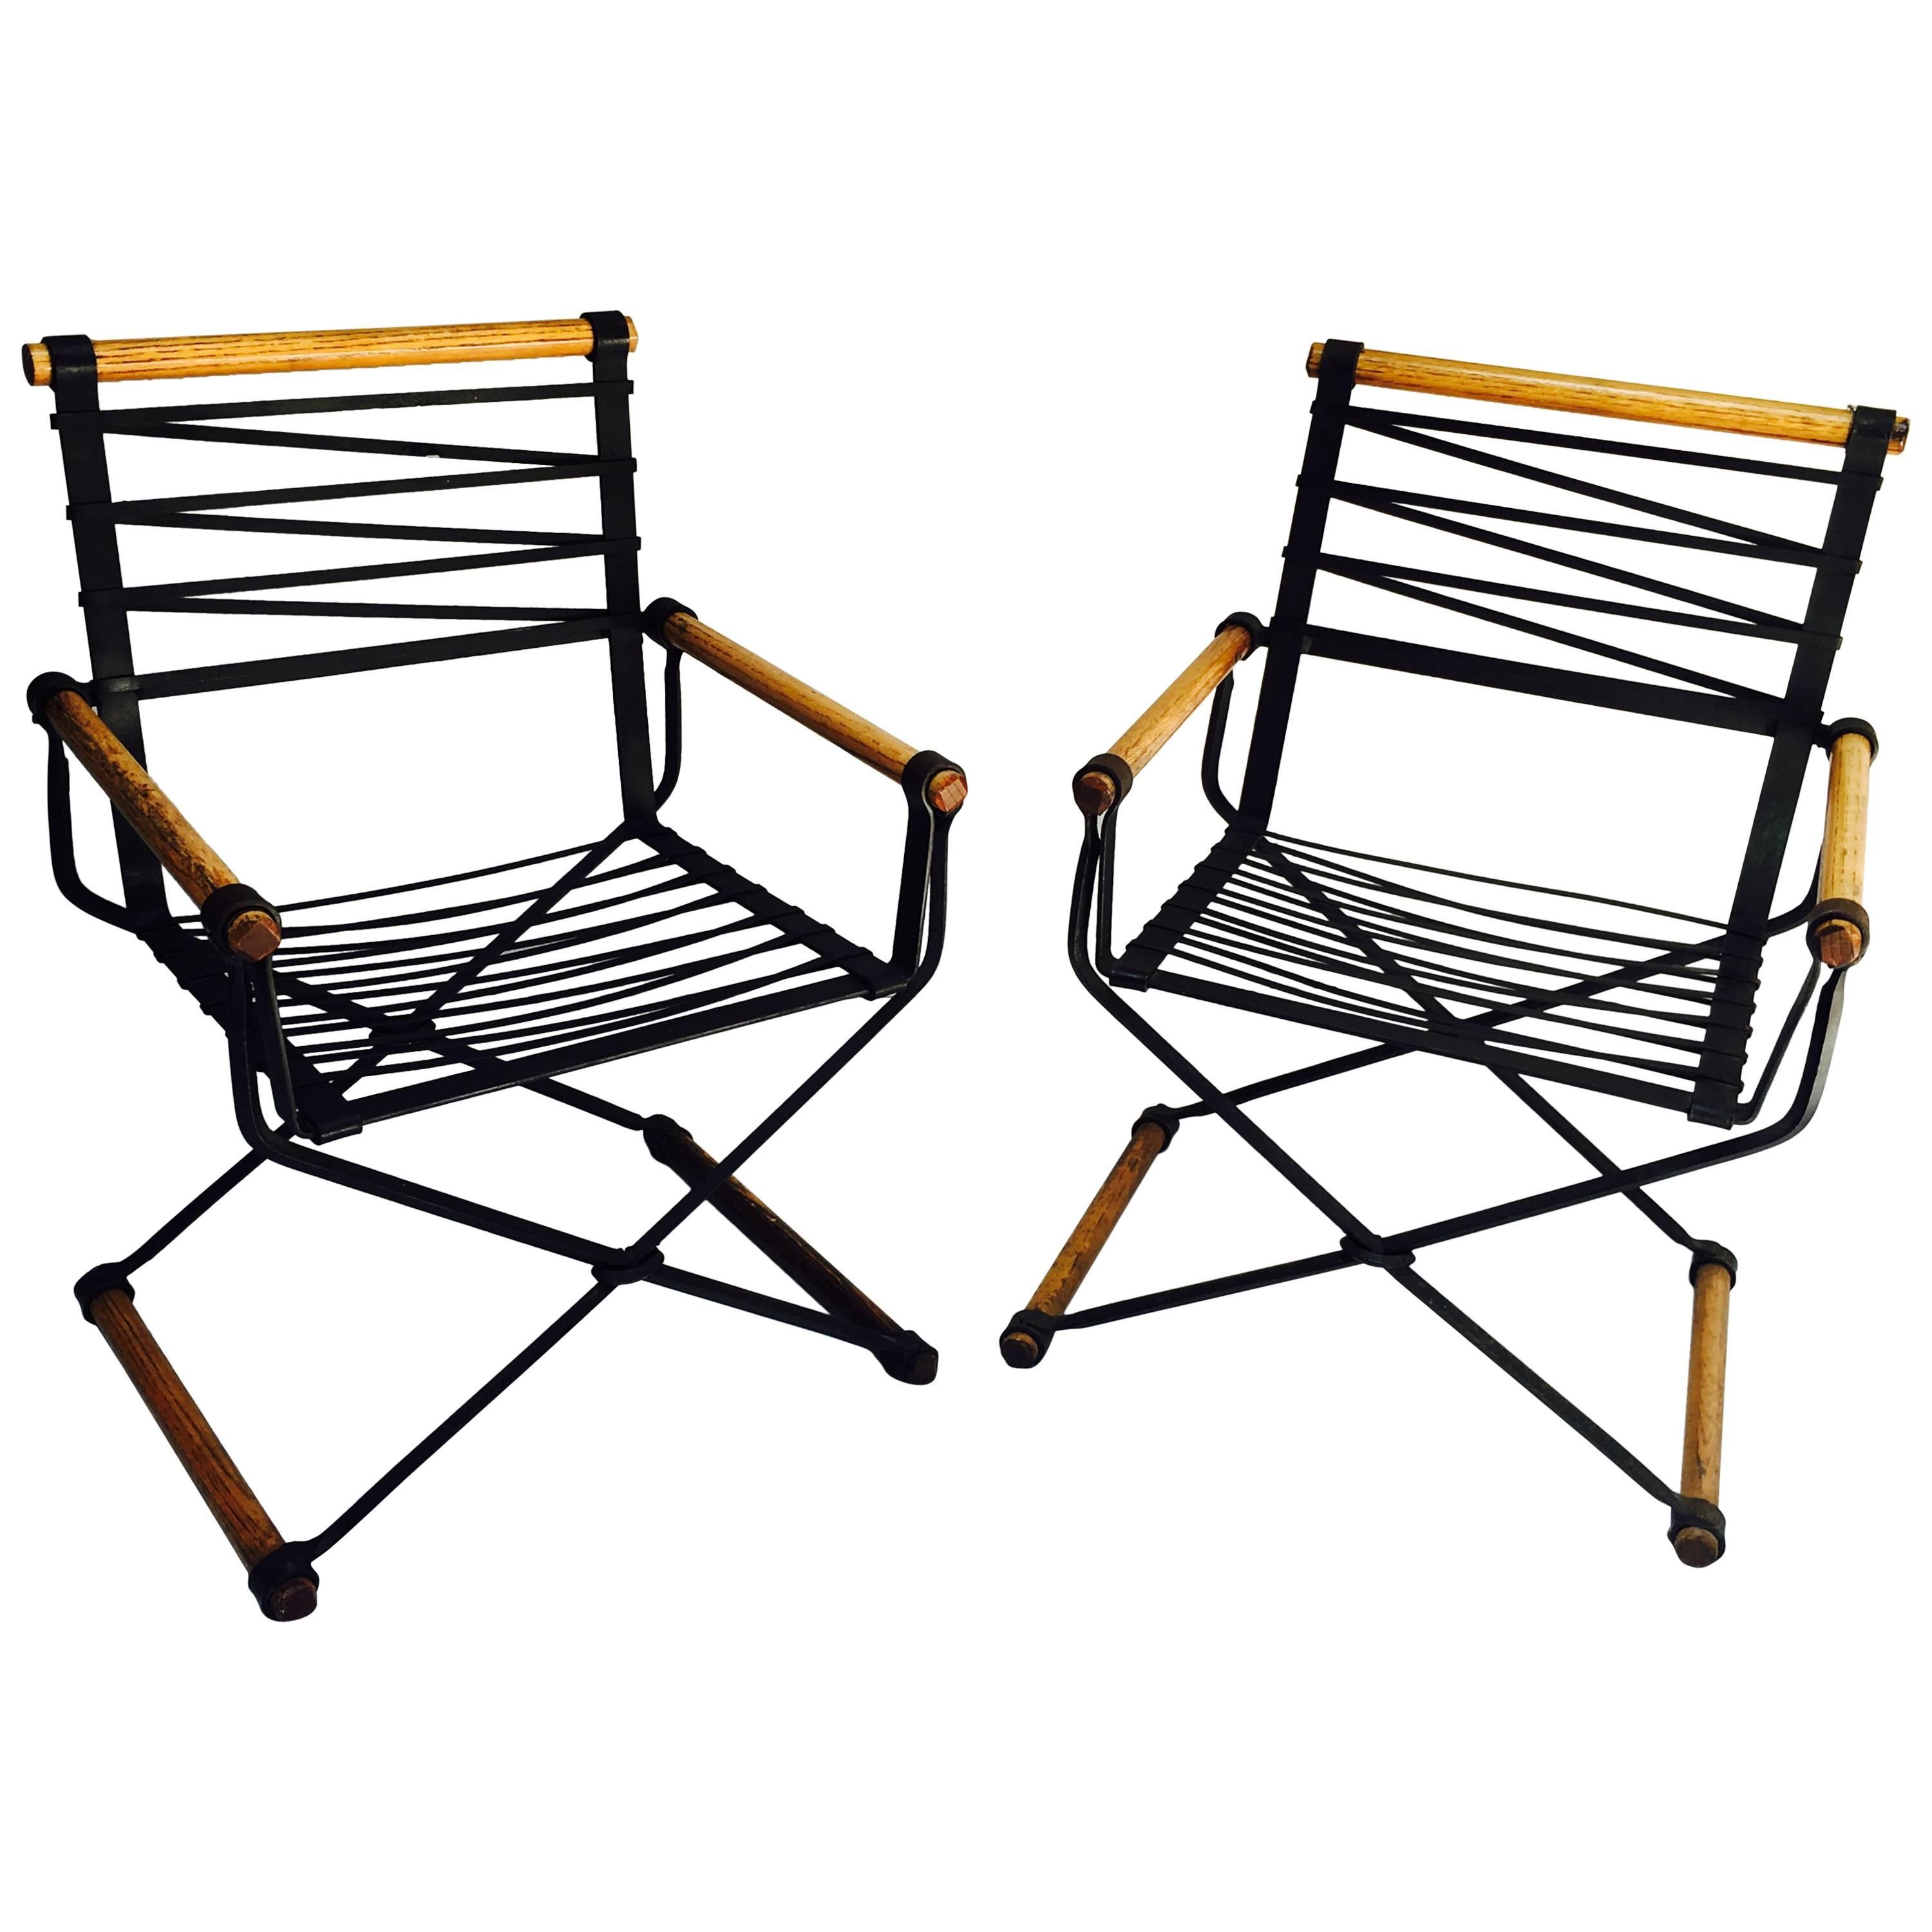 Une paire de fauteuils en fer forgé conçus par Cleo Baldon et fabriqués dans son studio/atelier Terra dans les années 1960.
Les chaises et leurs coussins sont en excellent état.
 